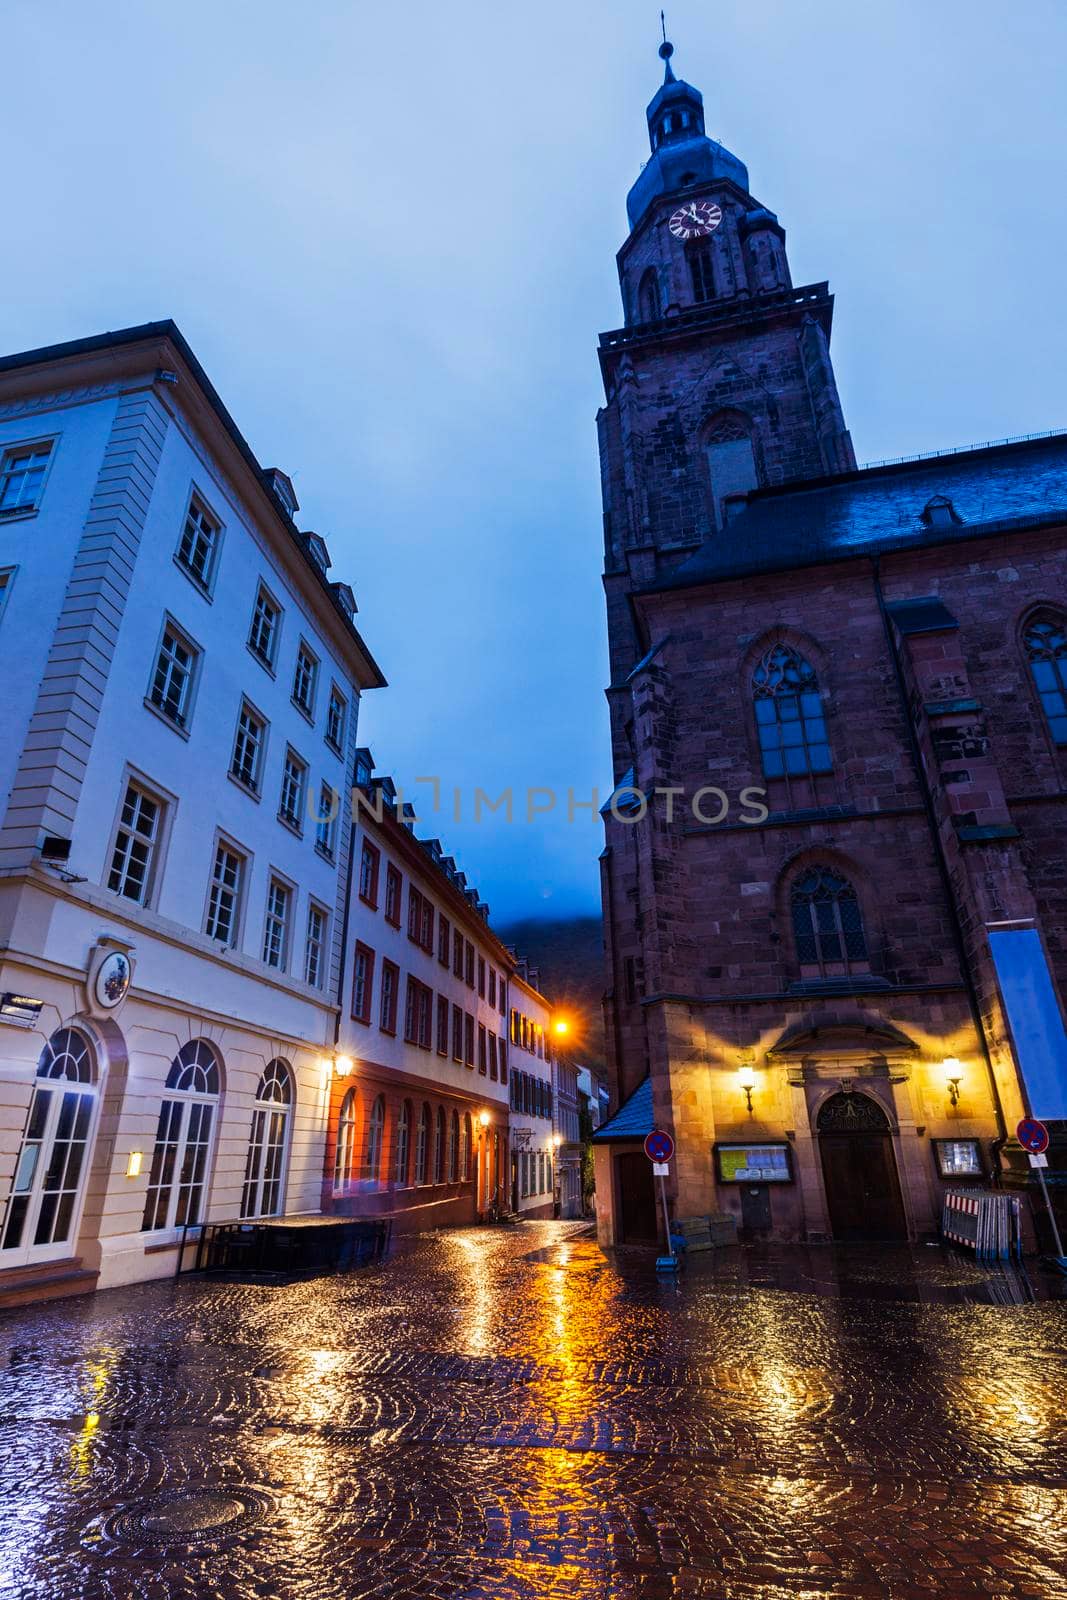 Church of the Holy Spirit on Marktplatz in Heidelberg by benkrut